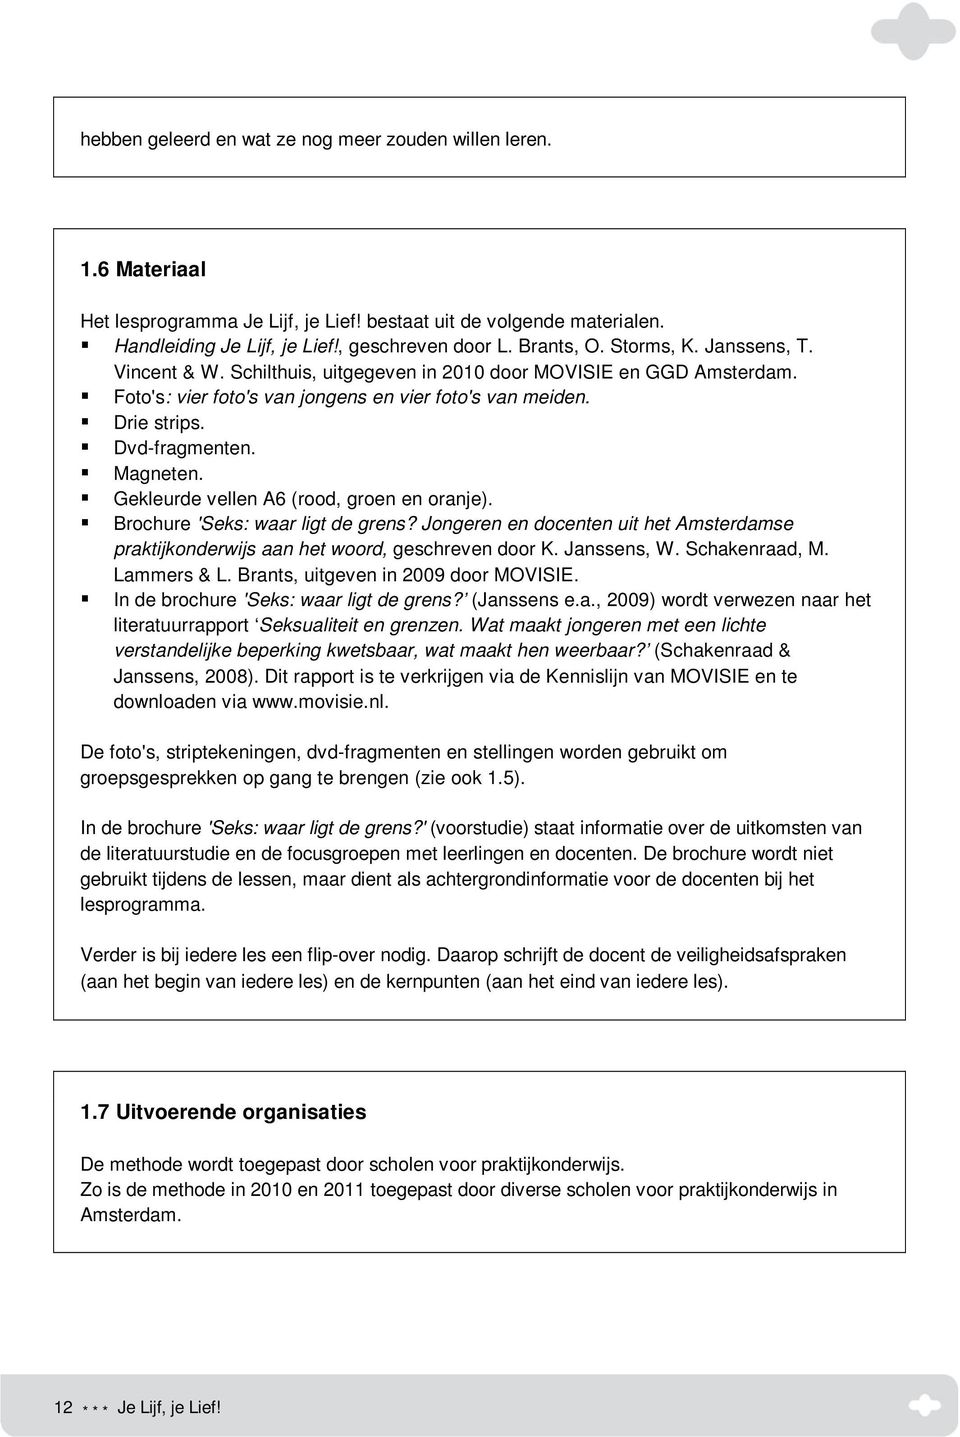 Gekleurde vellen A6 (rood, groen en oranje). Brochure 'Seks: waar ligt de grens? Jongeren en docenten uit het Amsterdamse praktijkonderwijs aan het woord, geschreven door K. Janssens, W.